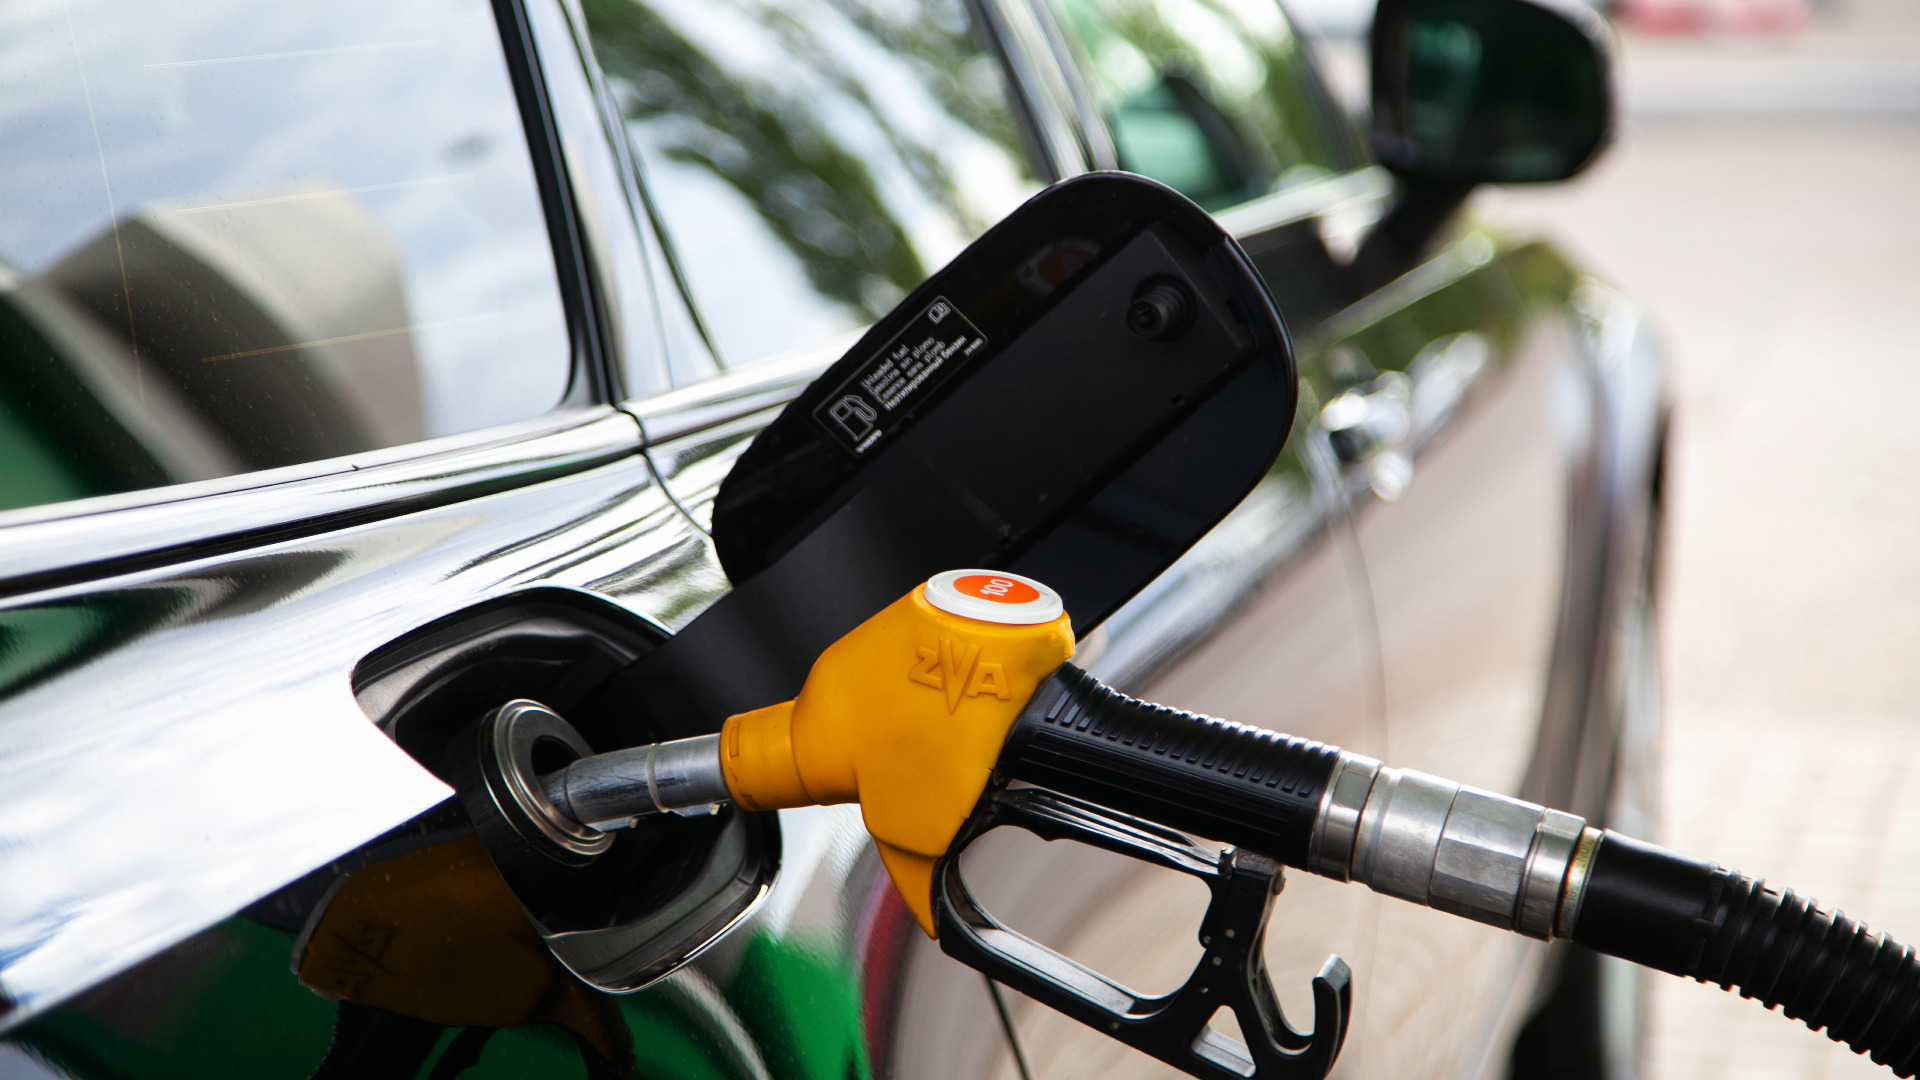 УФАС проверит цены на бензин в Карелии